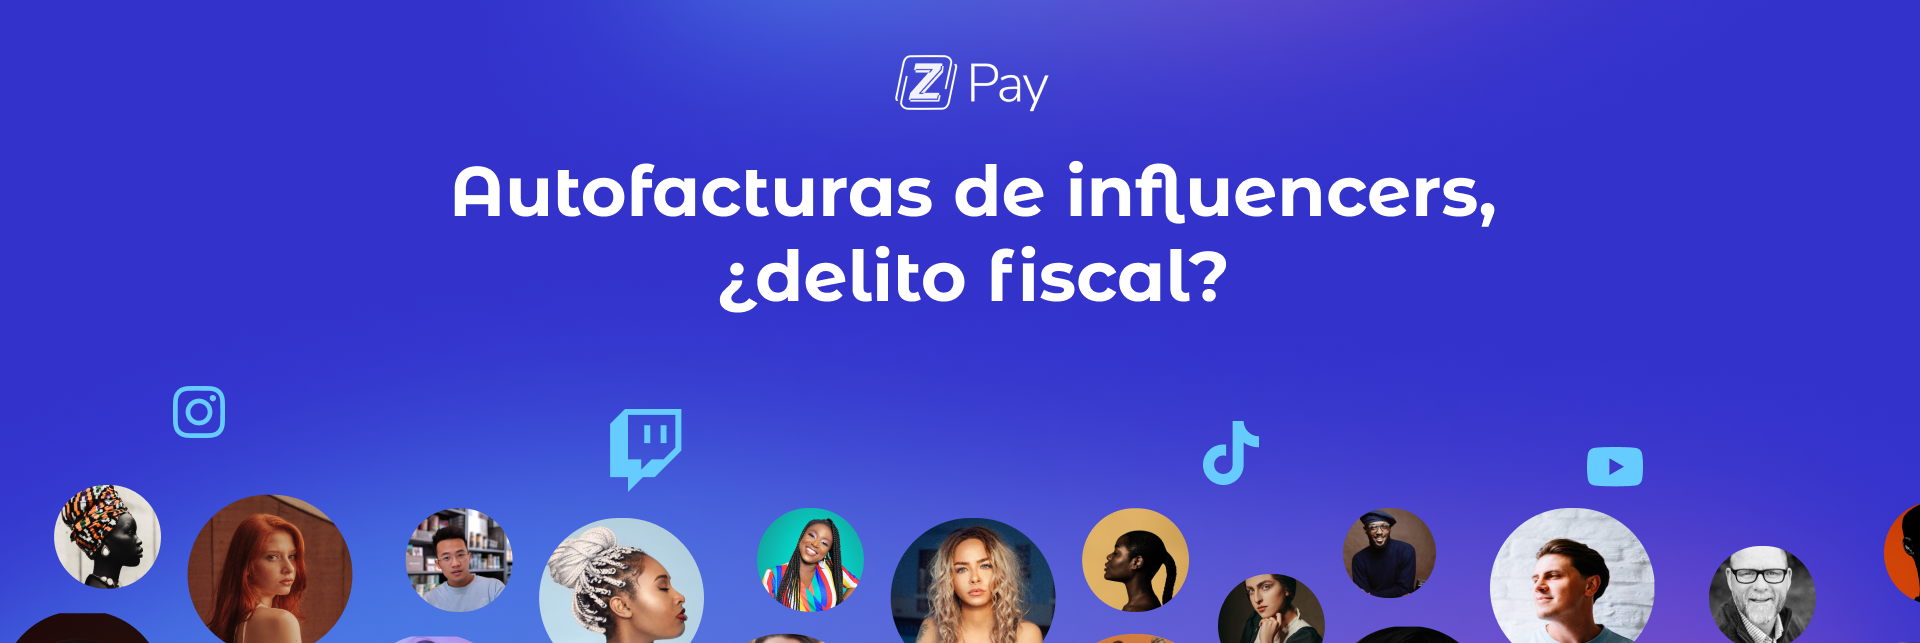 Banner con el título del blog "Autofacturas de influencers, ¿delito fiscal?" en color persian blue con íconos de redes sociales e imágenes de influencers en círculos.